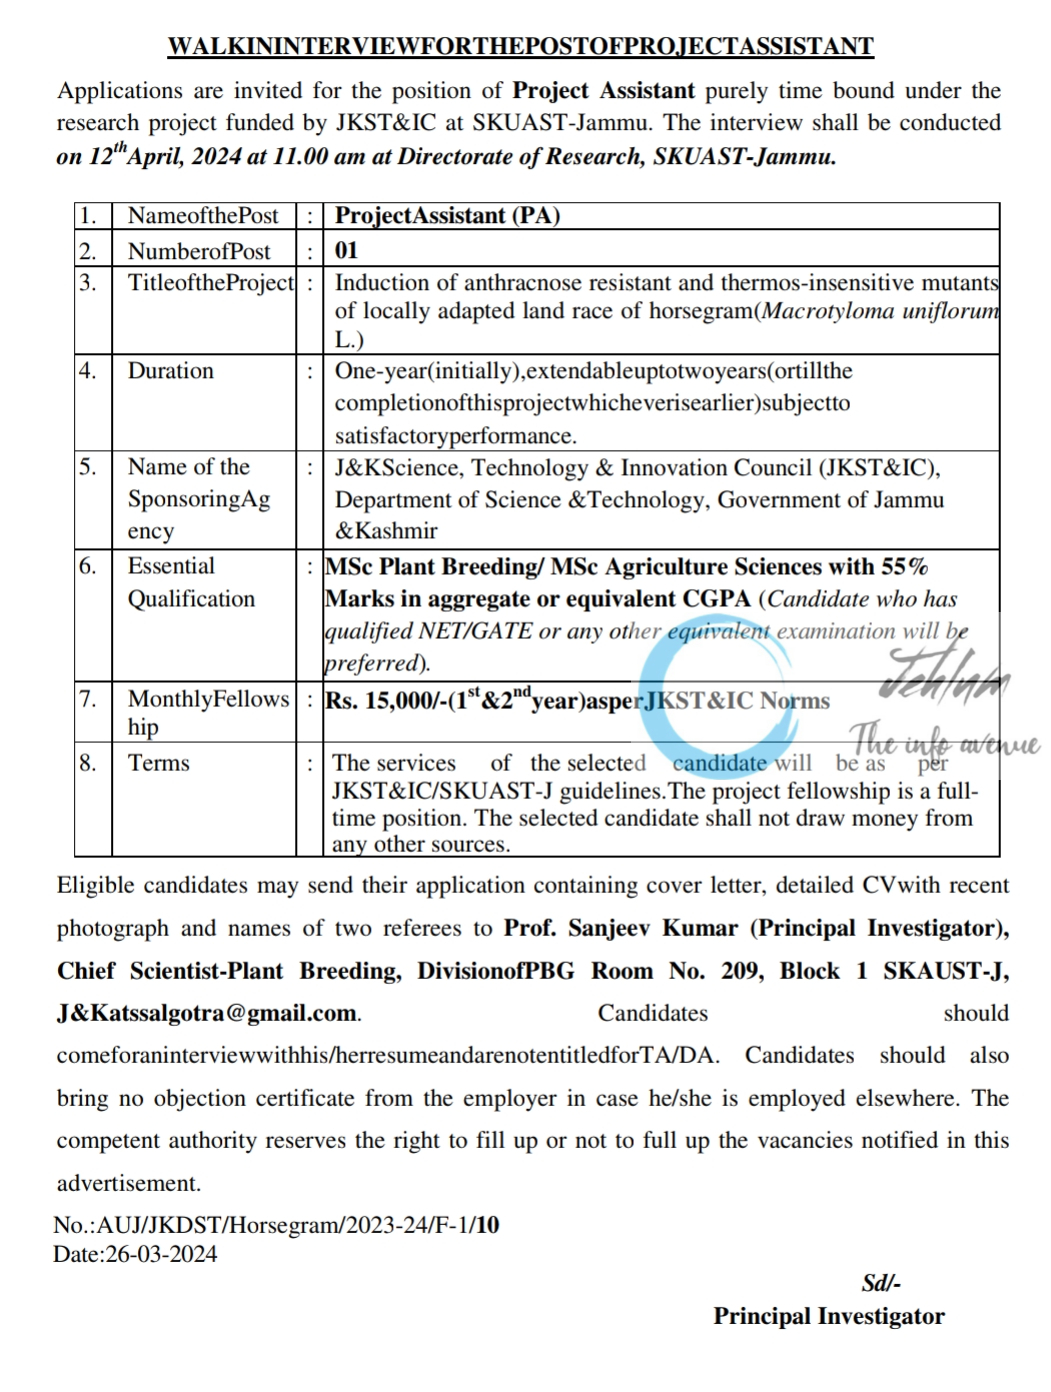 SKUAST-Jammu Project Assistant Advertisement Notice 2024